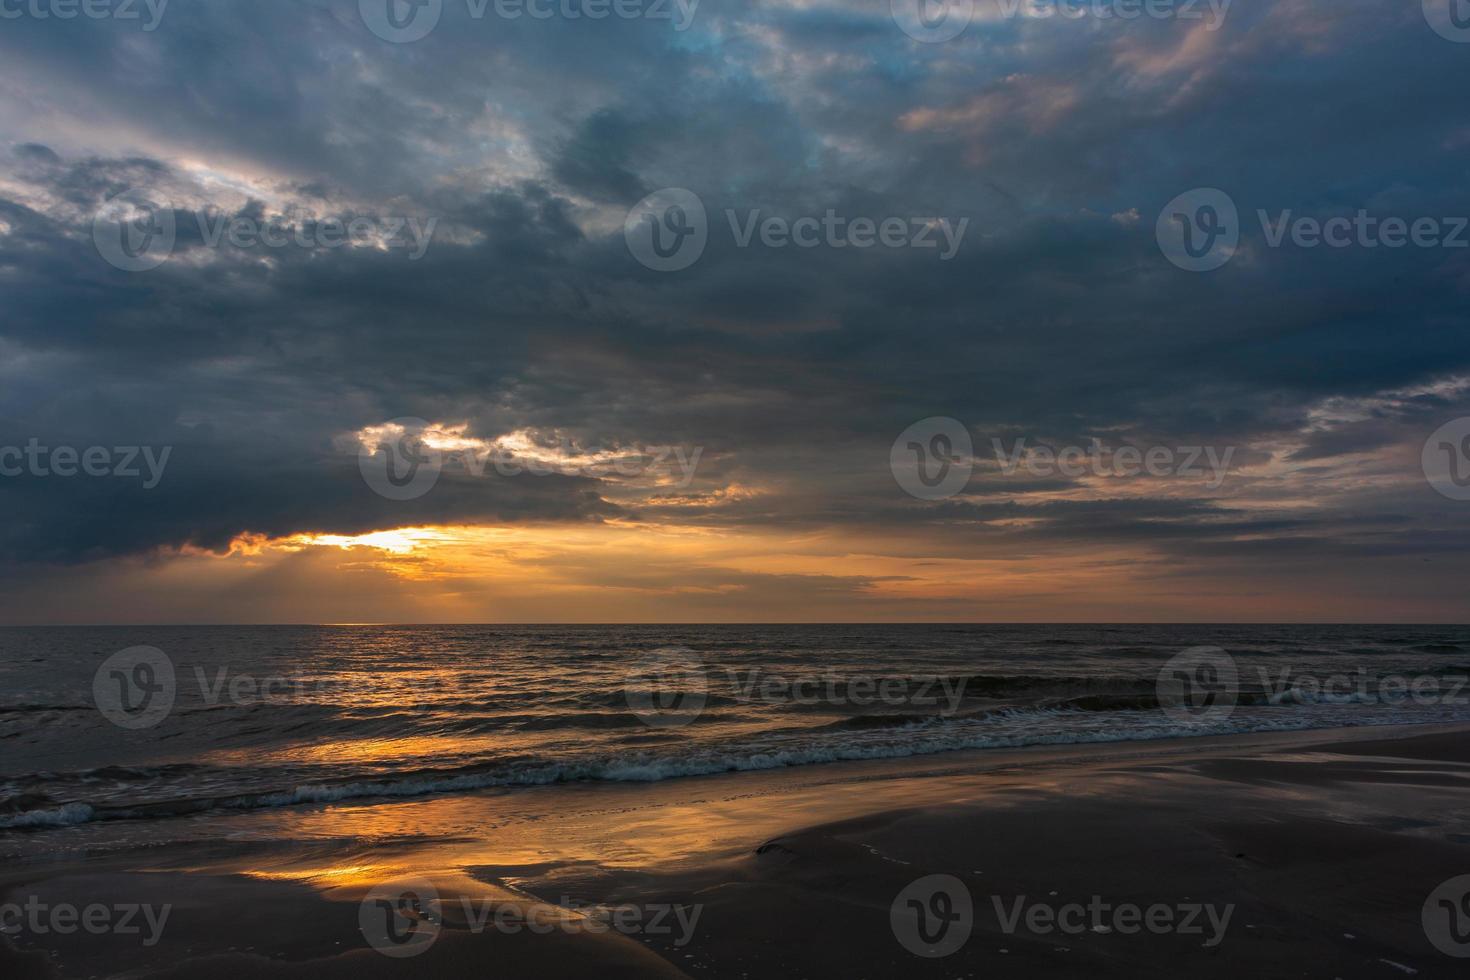 bewolkt zee keer bekeken van de Baltisch zee Bij zonsondergang foto